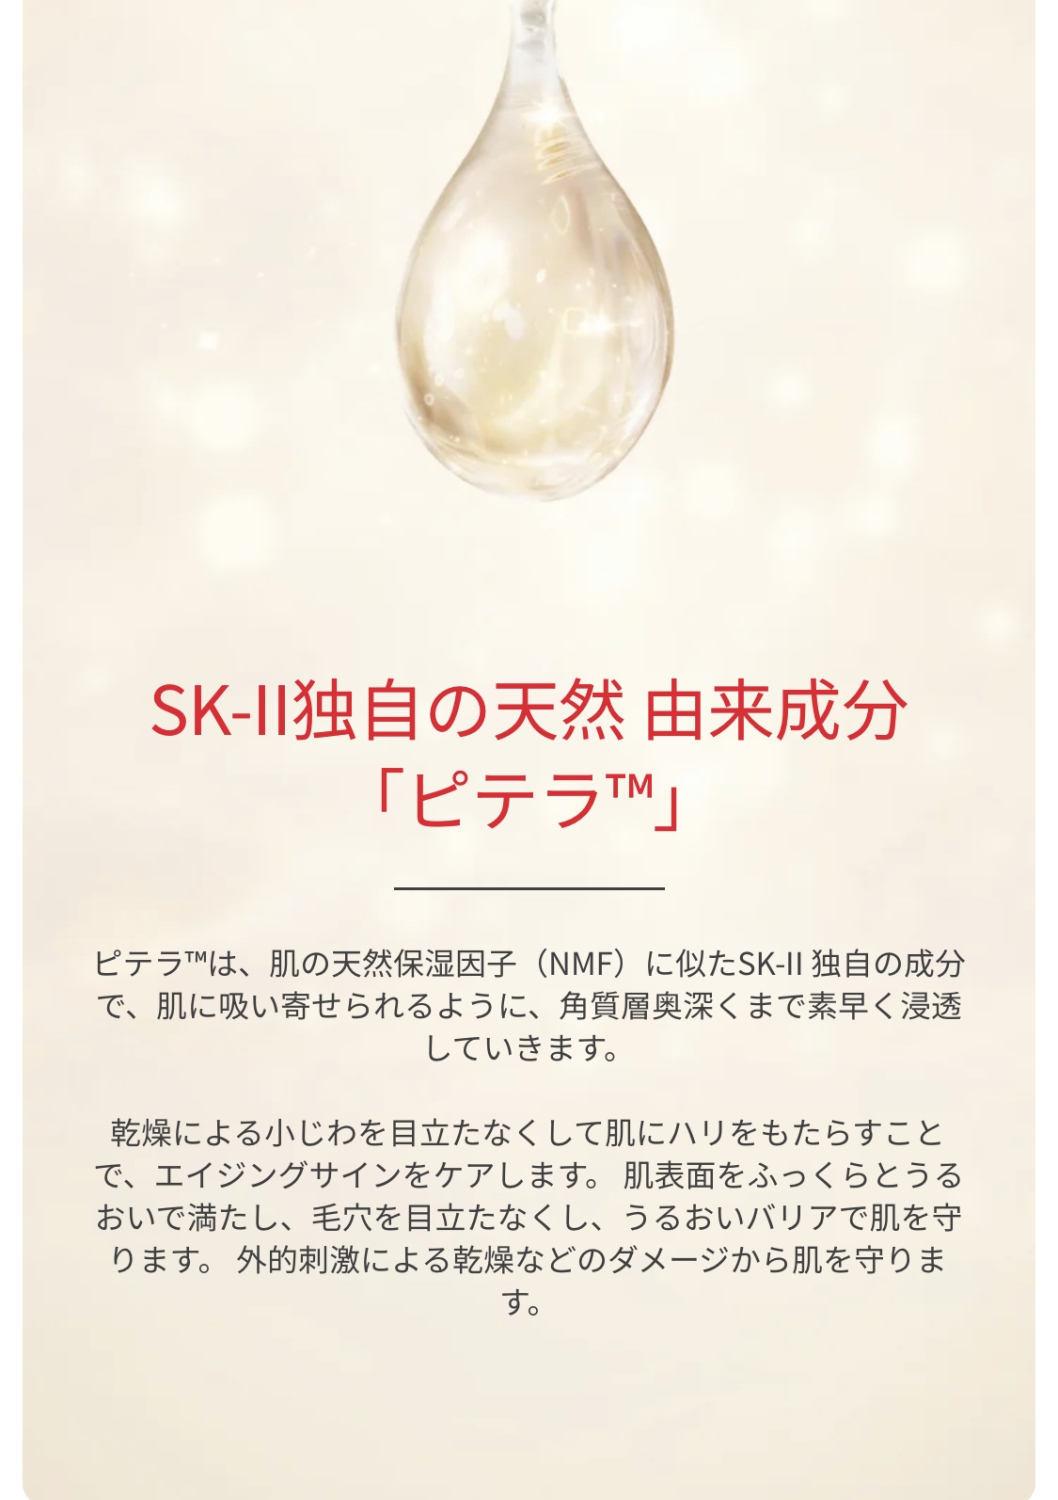 SKⅡ スキンパワー エッセンス 価格 交渉 送料無料 - 美容液